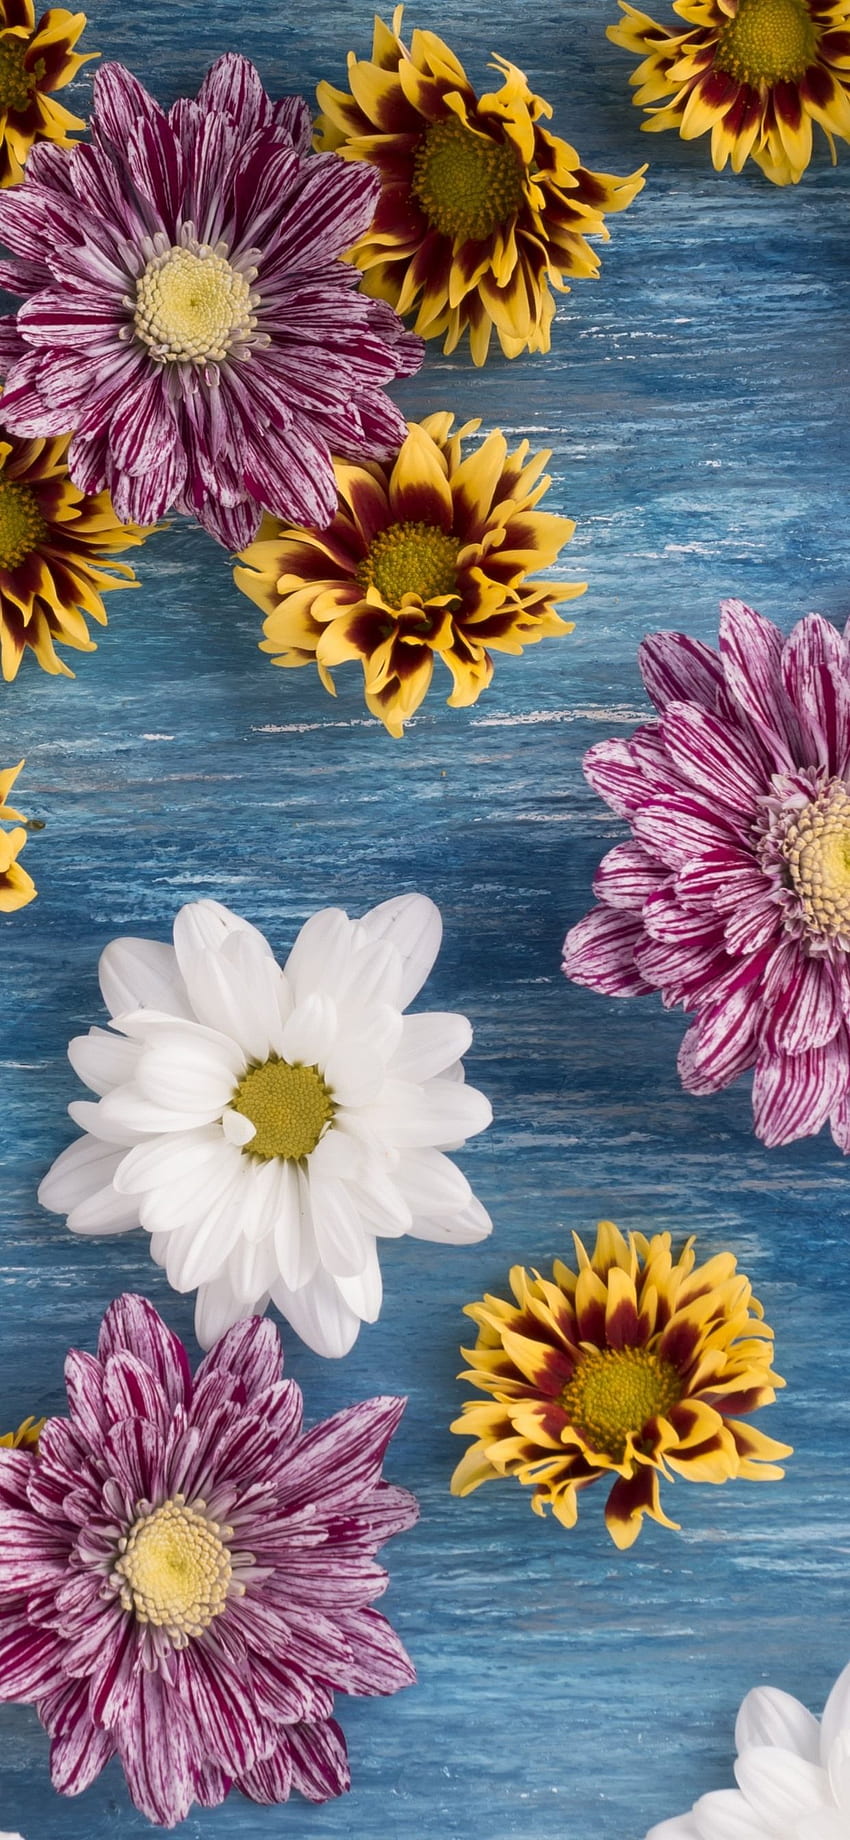 Banyak Bunga, Krisan, Merah Muda, Putih, Kuning IPhone 11 Pro XS Max , Latar Belakang wallpaper ponsel HD